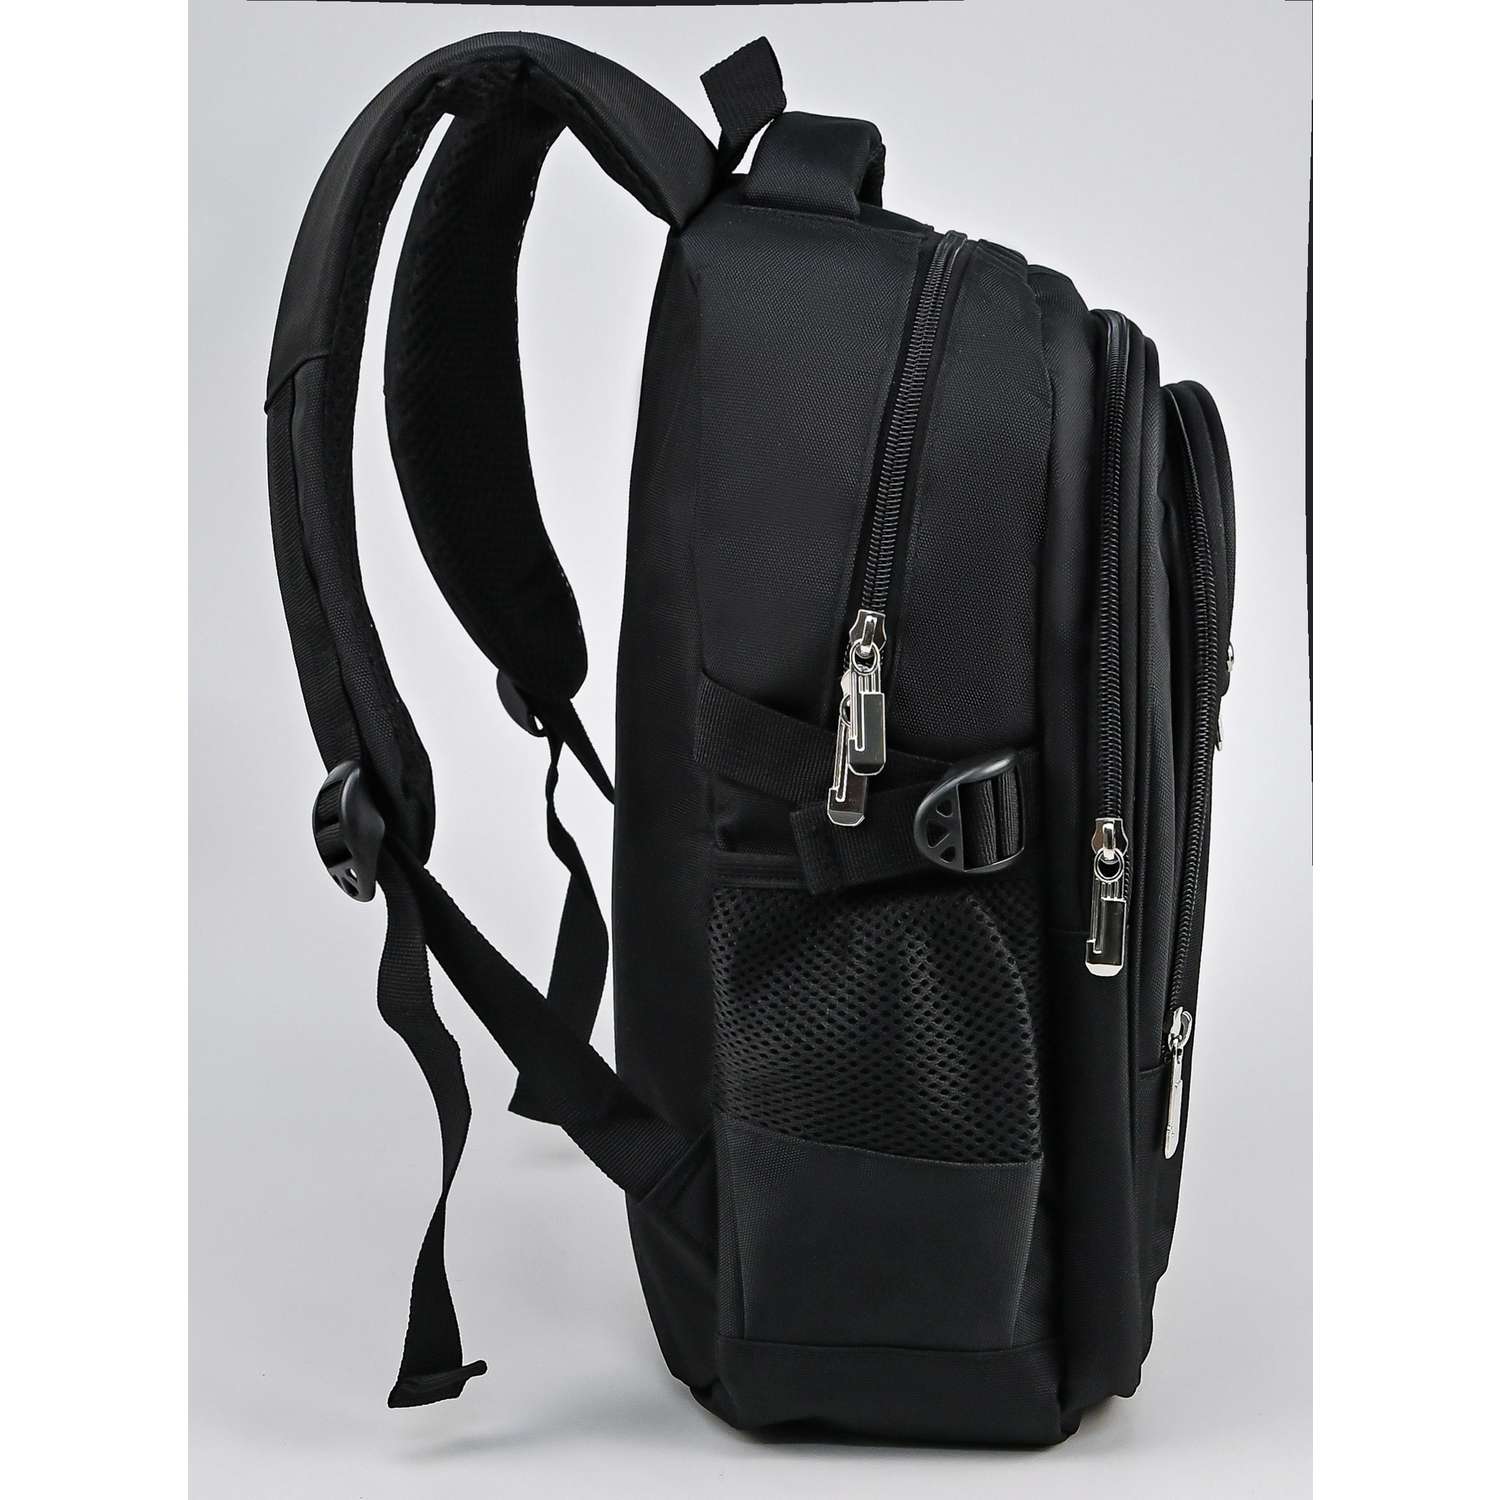 Рюкзак школьный Evoline черный EVO-167-2 - фото 3